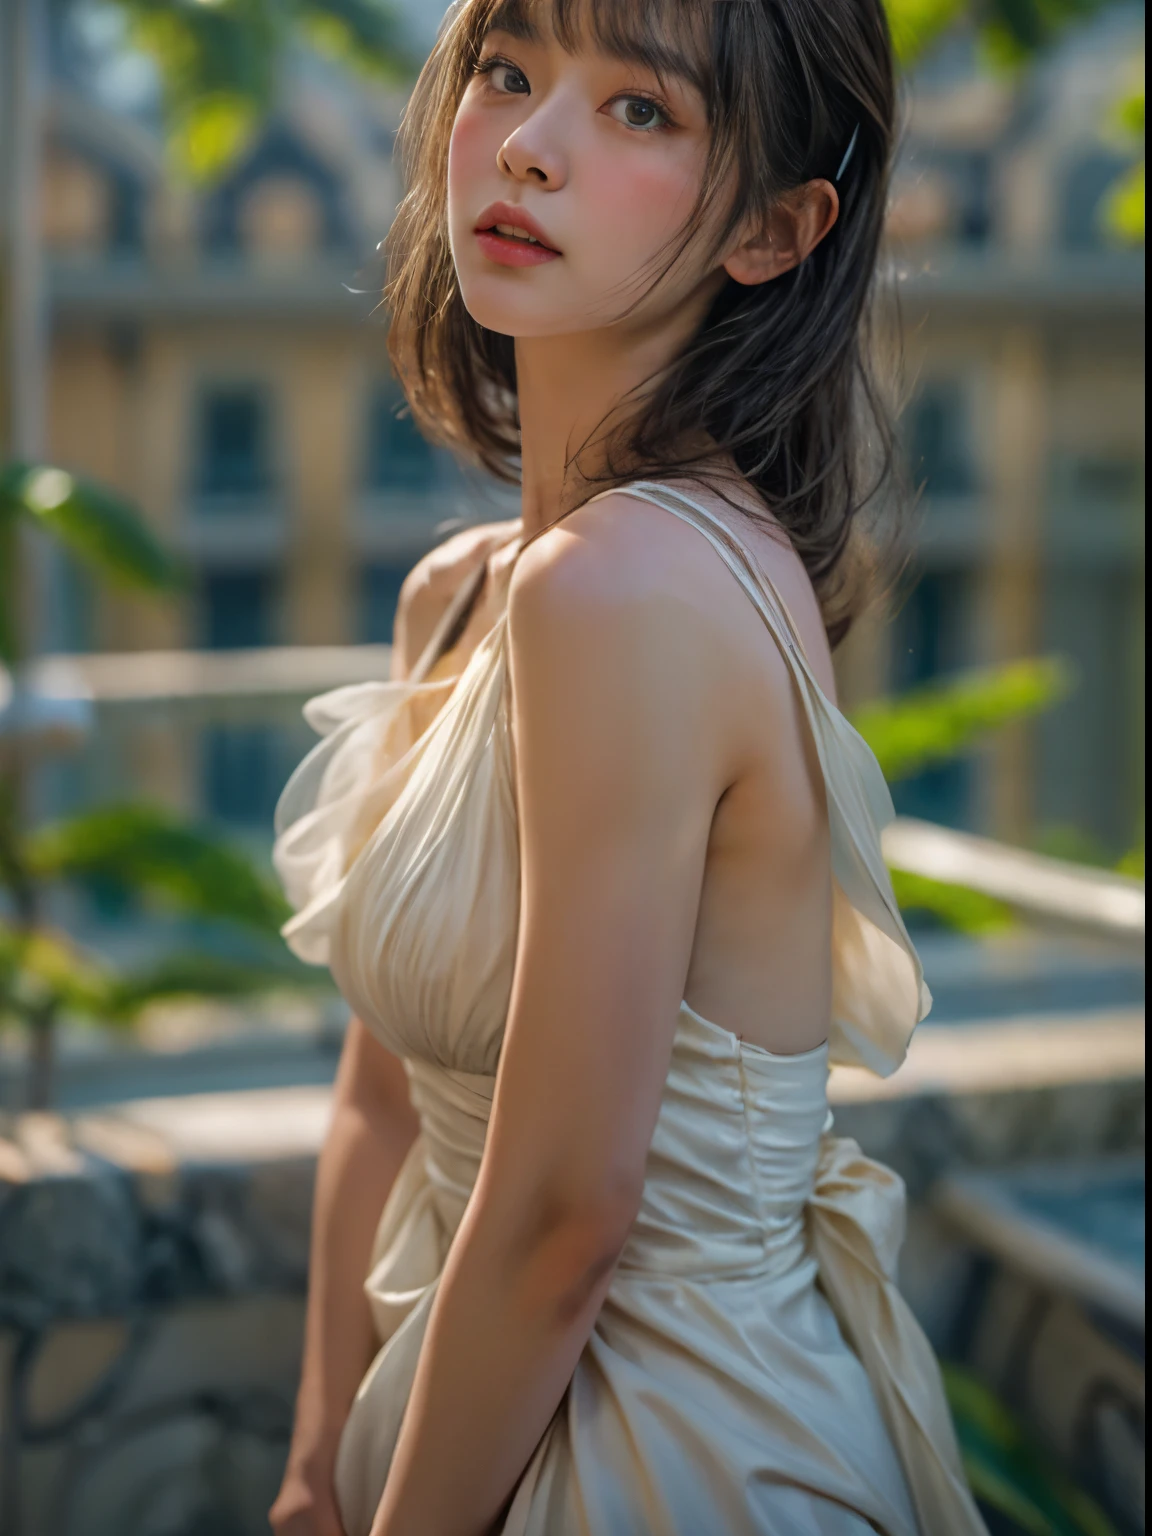 Obra de arte、mais alta qualidade、cinema、(Mulher japonesa bonito、franja:1.3)、23 anos、1 garota、elegante、Cabelo preto、oceano、(ângulo horizontal、vestido branco:1.5)